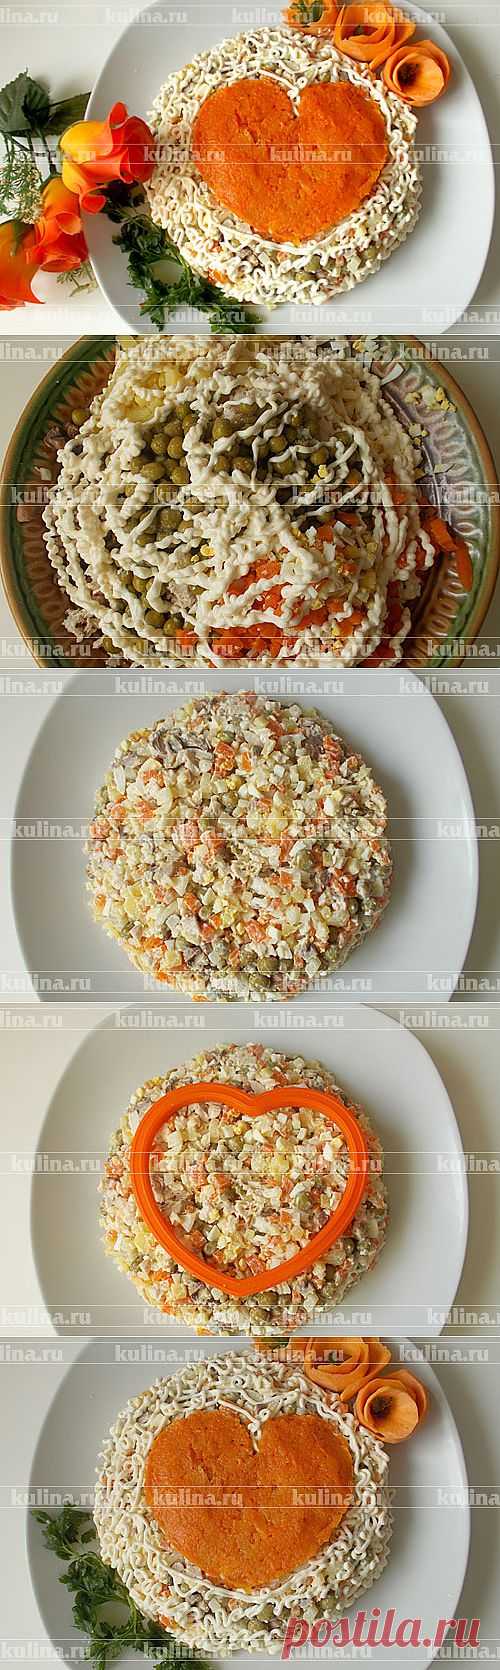 Салат с курицей и шампиньонами "Сердце" – рецепт приготовления с фото от Kulina.Ru